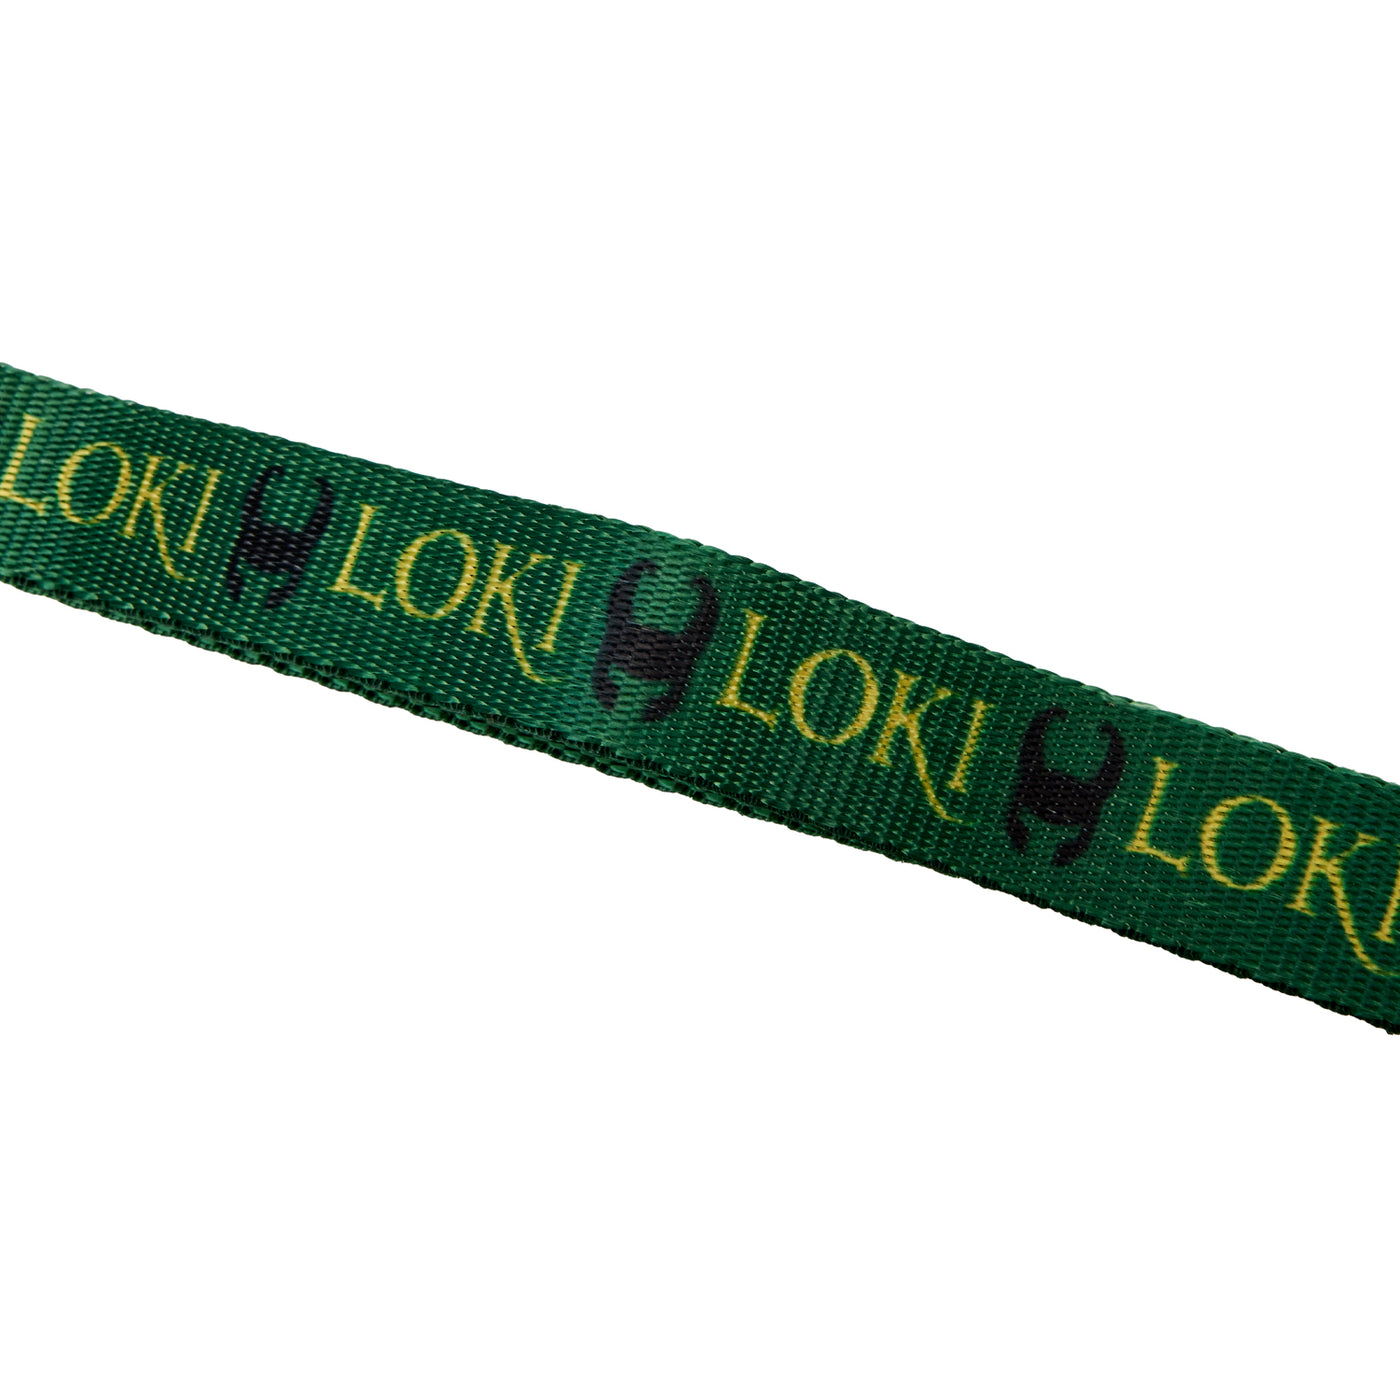 Marvel Loki AOP Dog Collar